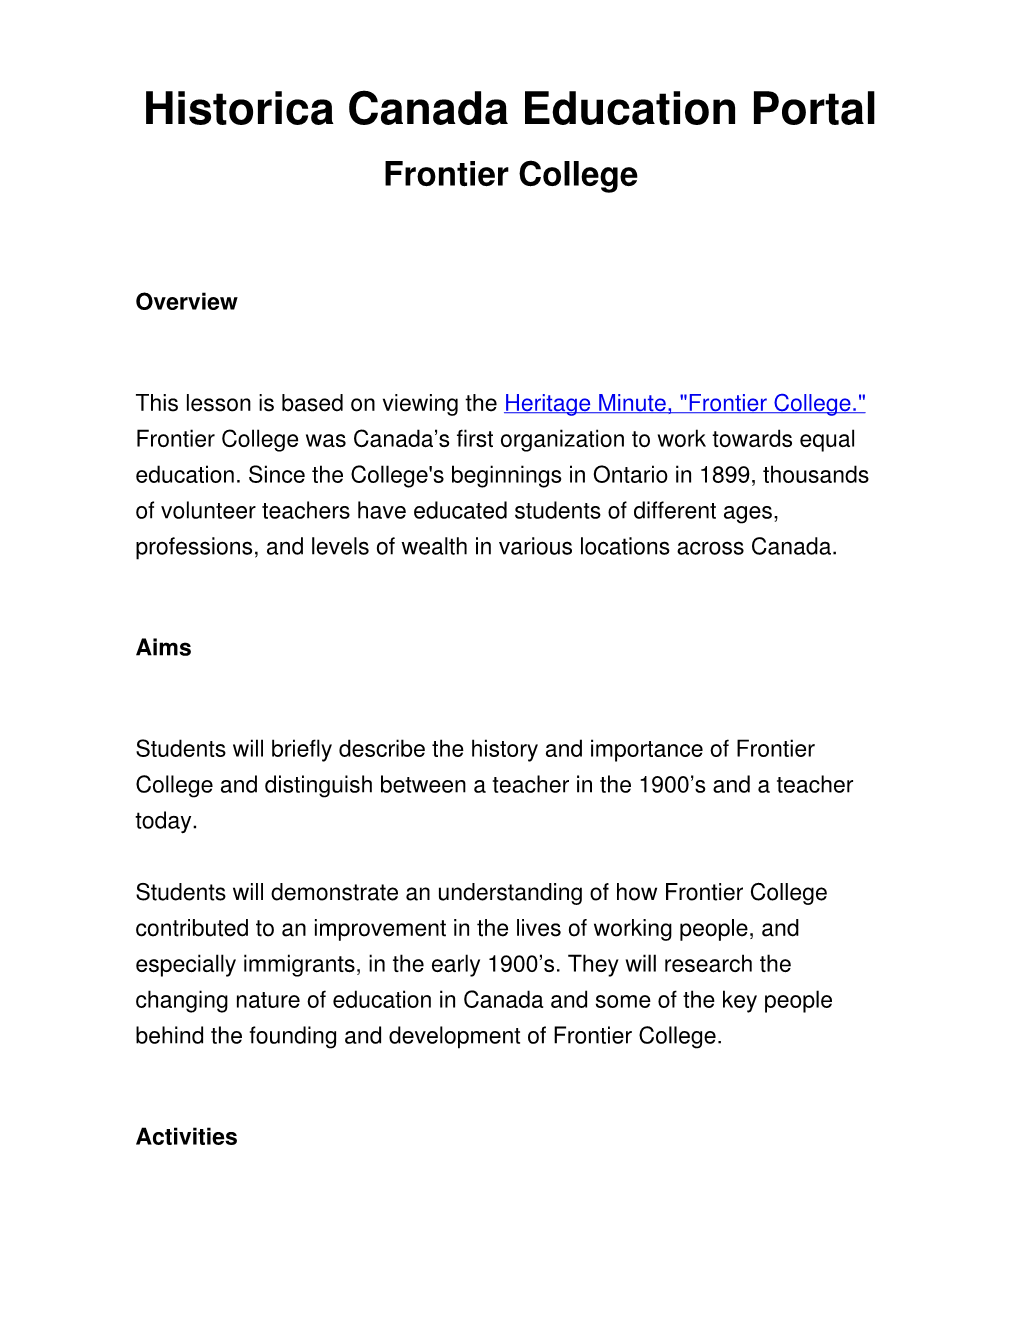 Historica Canada Education Portal Frontier College